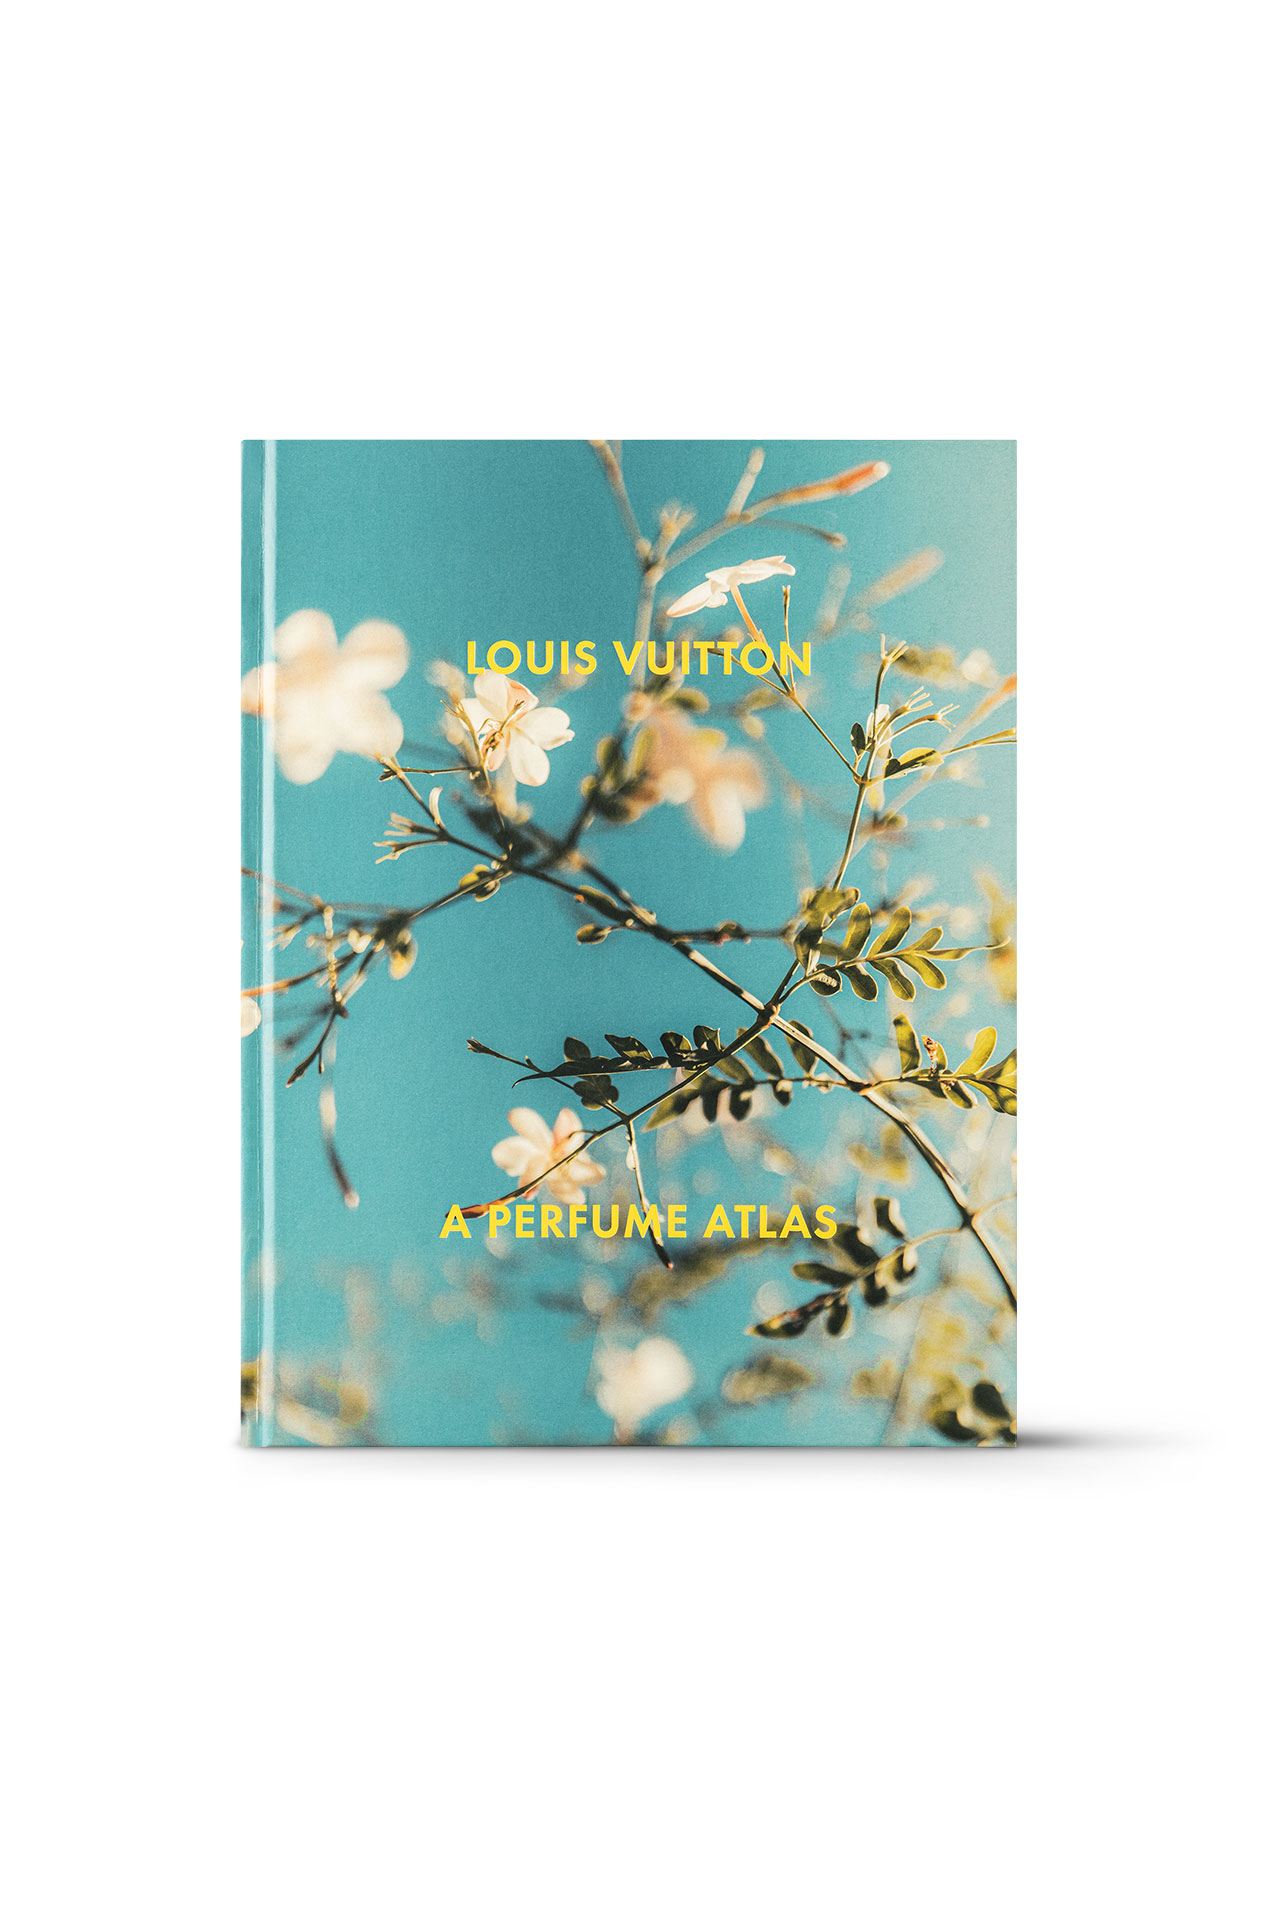 Louis Vuitton book A Perfume Atlas